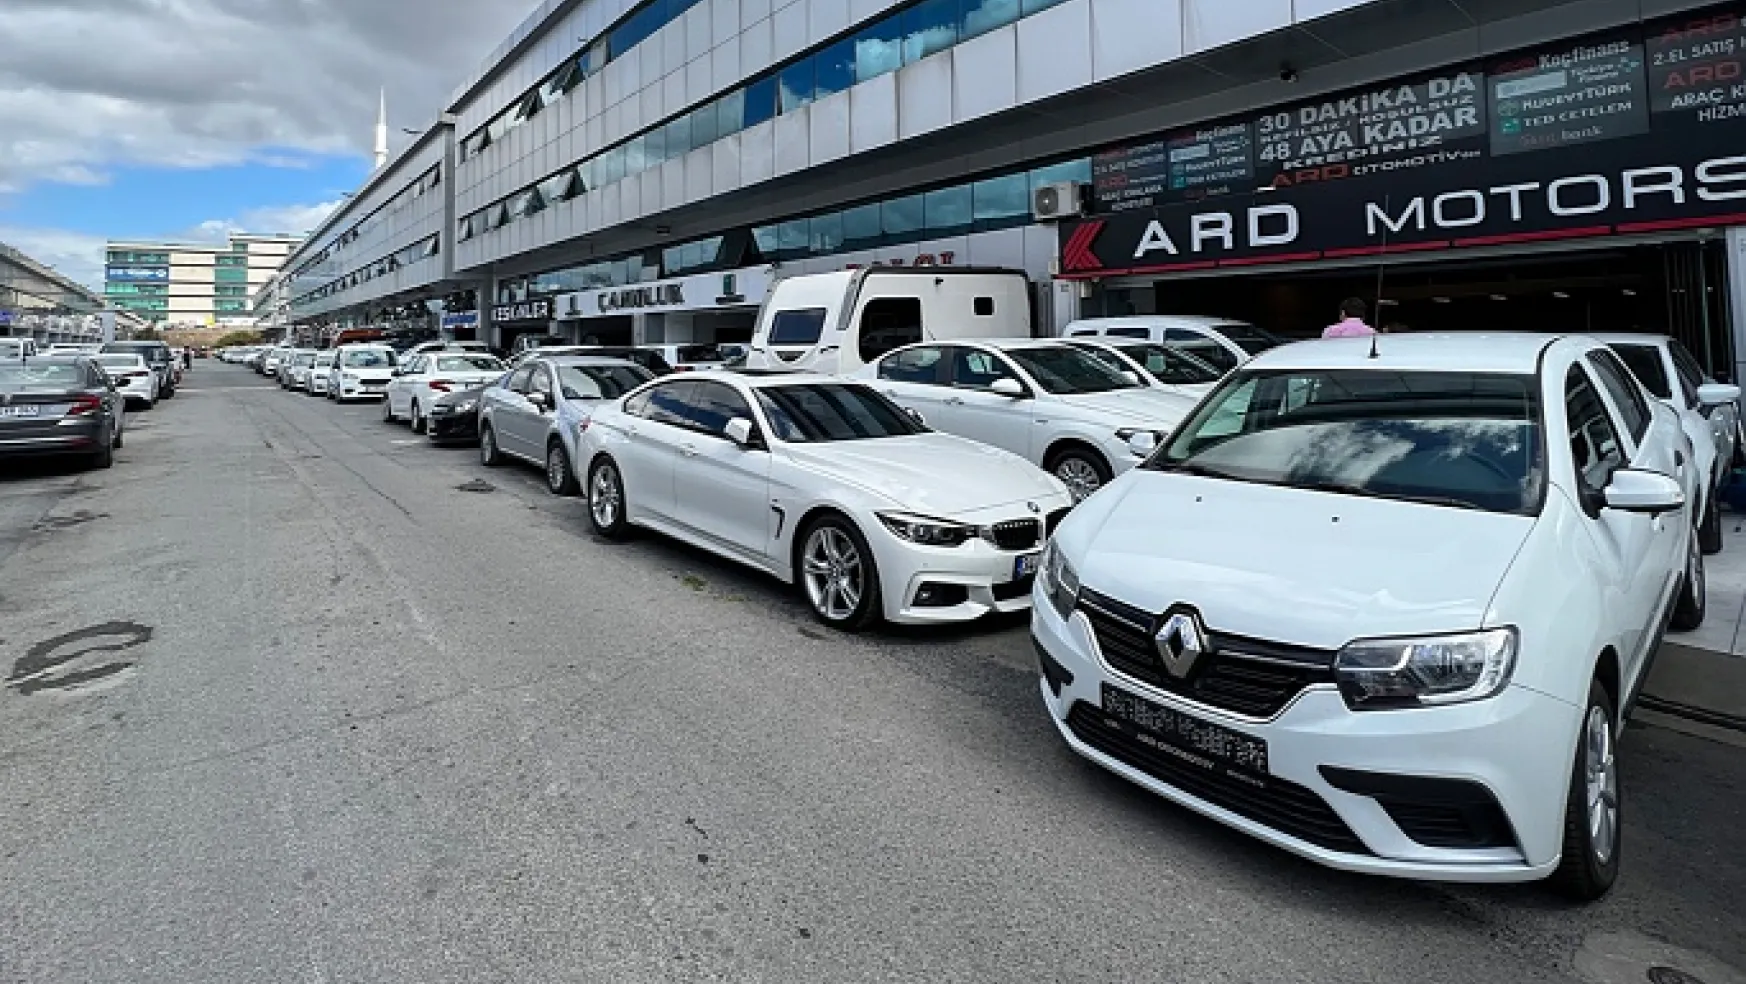 Türkiye'de İkinci El Otomobil Piyasasında Durgunluk Sürüyor, Lüks Araç Satışlar Durma Noktasında